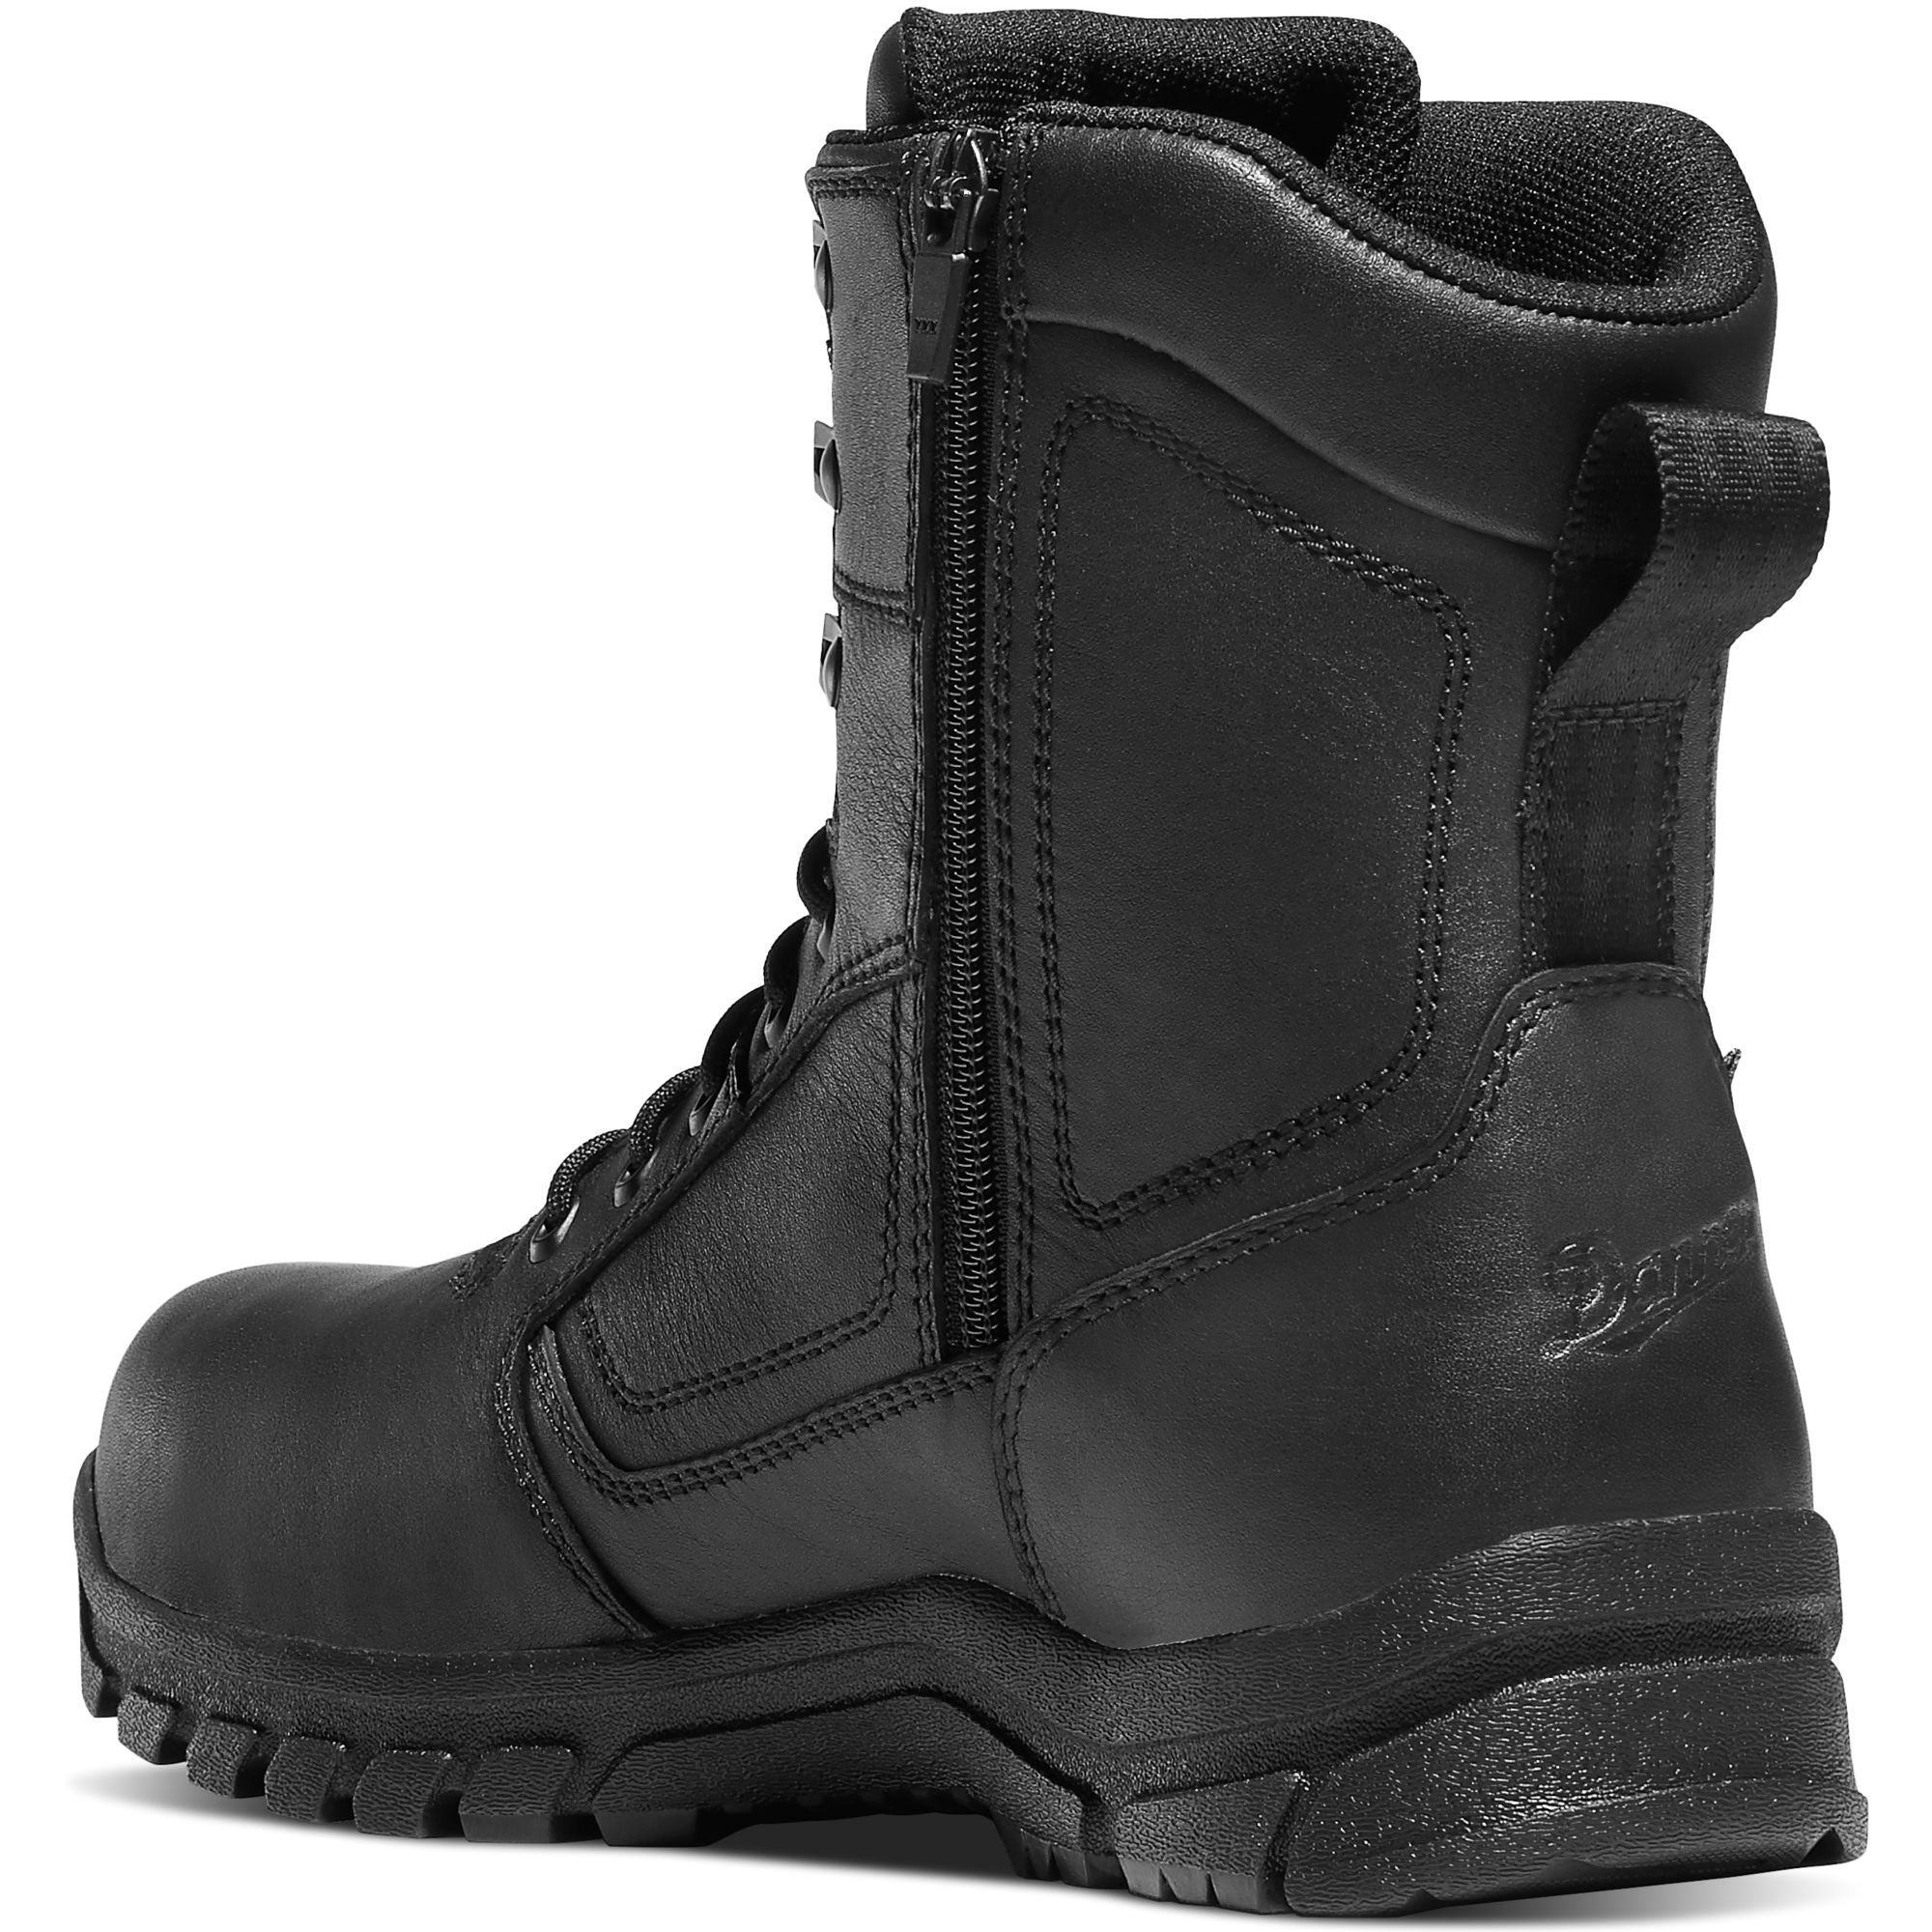 Danner Men's Lookout EMS 8" Side Zip Comp Toe WP Duty Boot Black 23826  - Overlook Boots